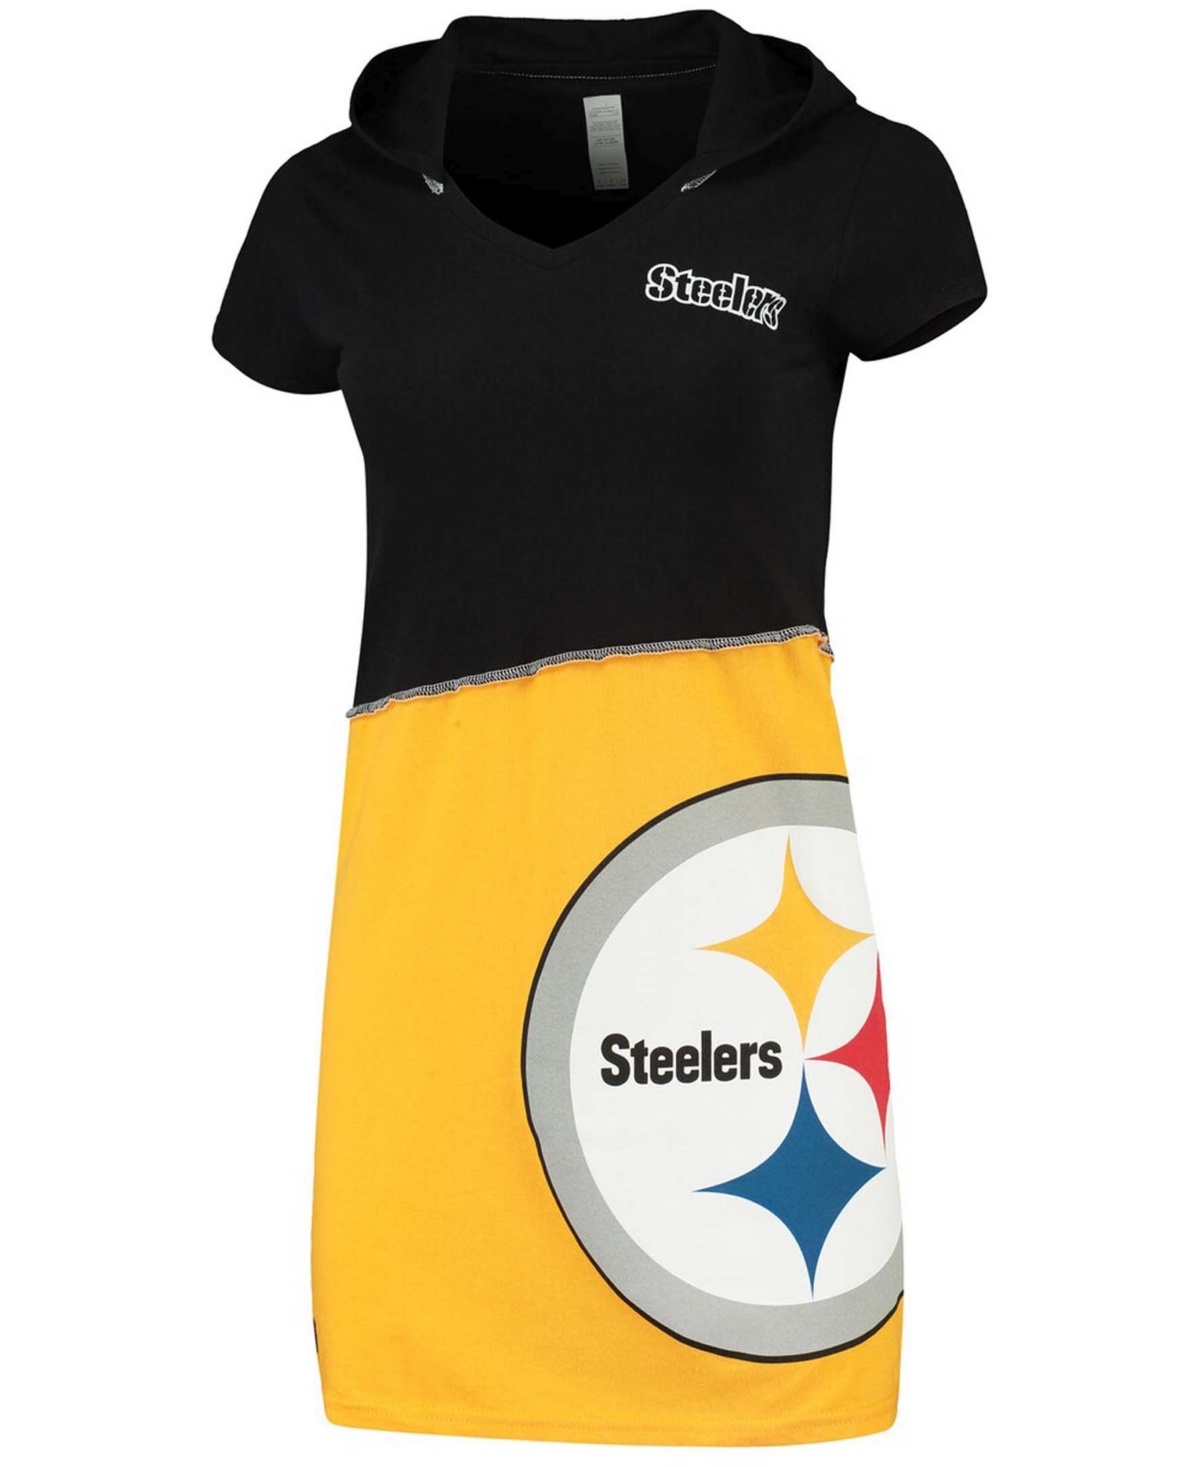 Women's Black, Gold-Tone Pittsburgh Steelers Hooded Mini Dress - Black, Gold-Tone